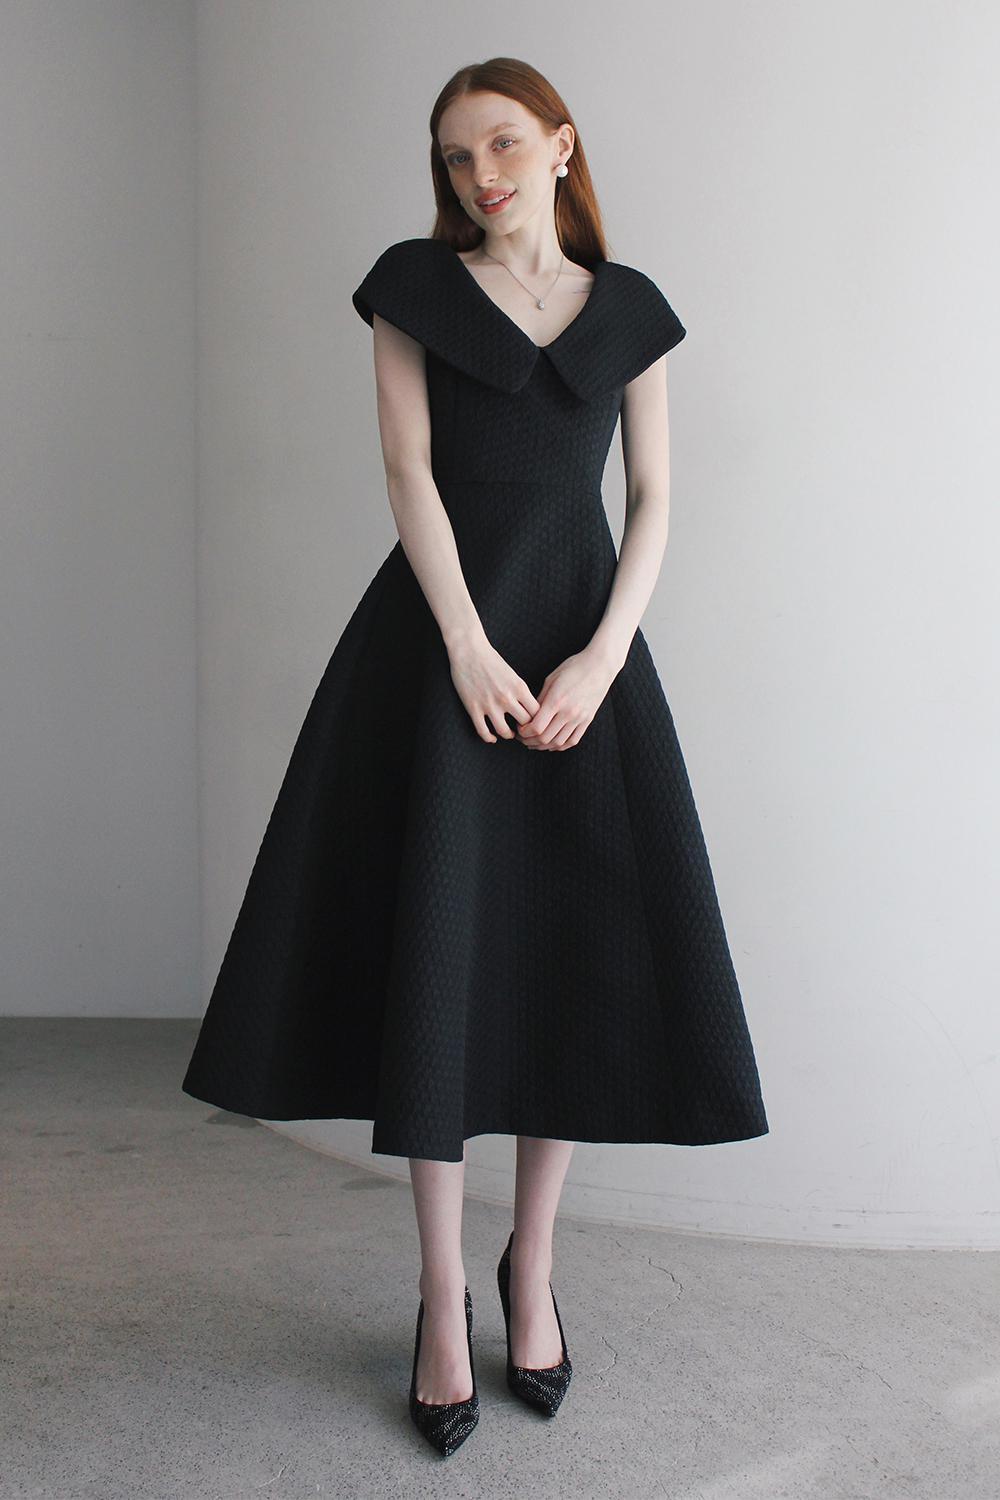 Andrea jacquard long dress (Black)